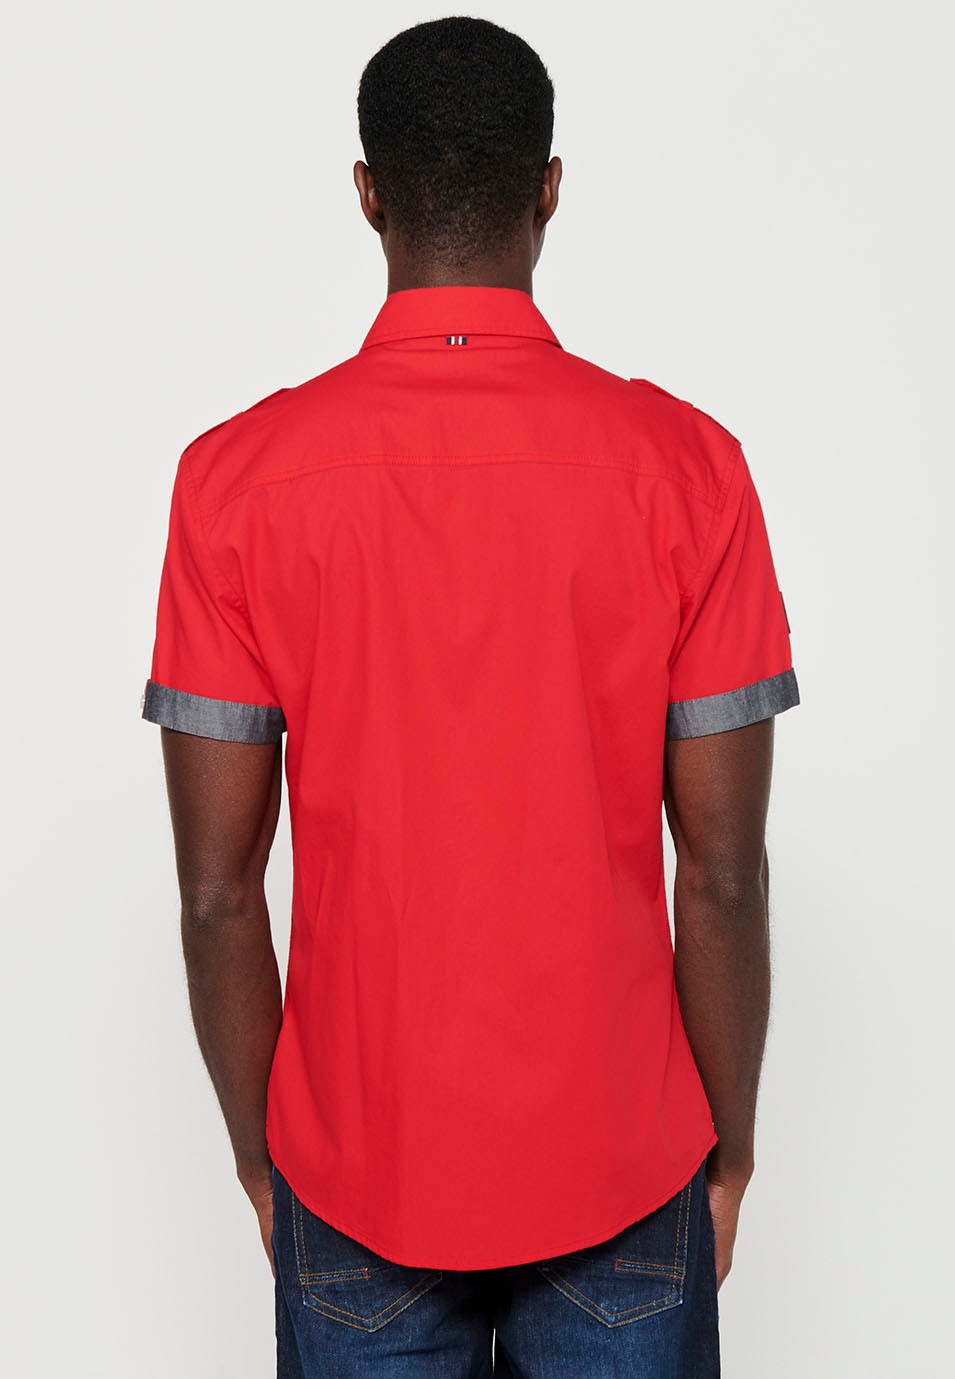 Cotton shirt, short sleeve, shoulder details, red color for men